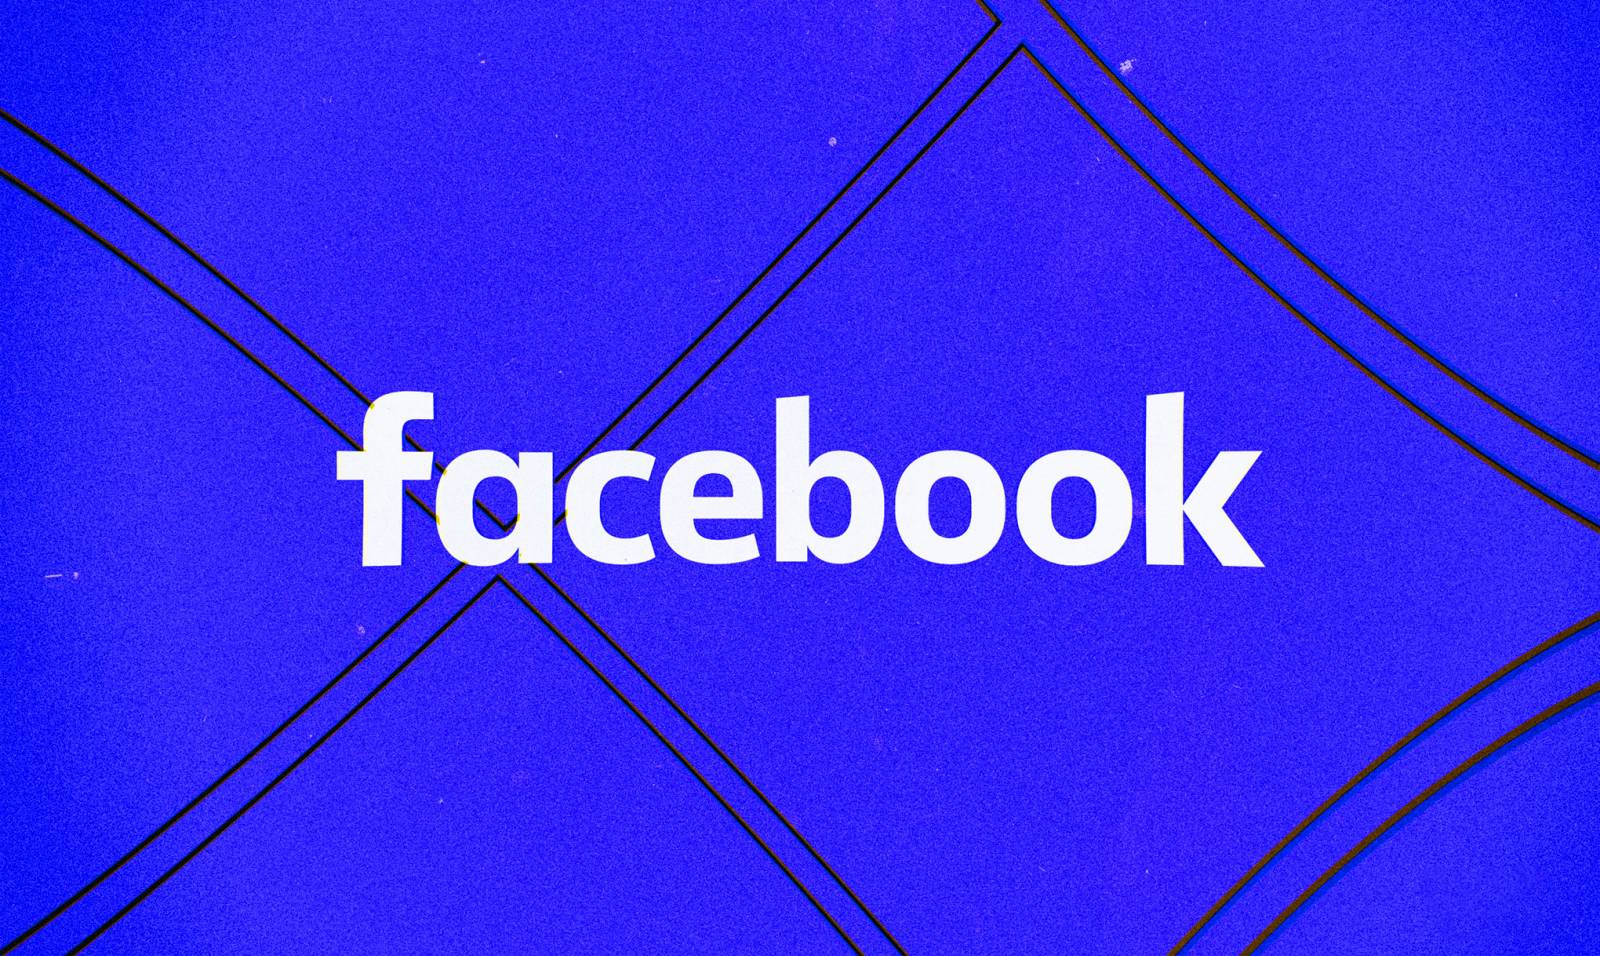 Facebook-päivitys on julkaistu sovellukselle, mitä muutoksia tarjotaan